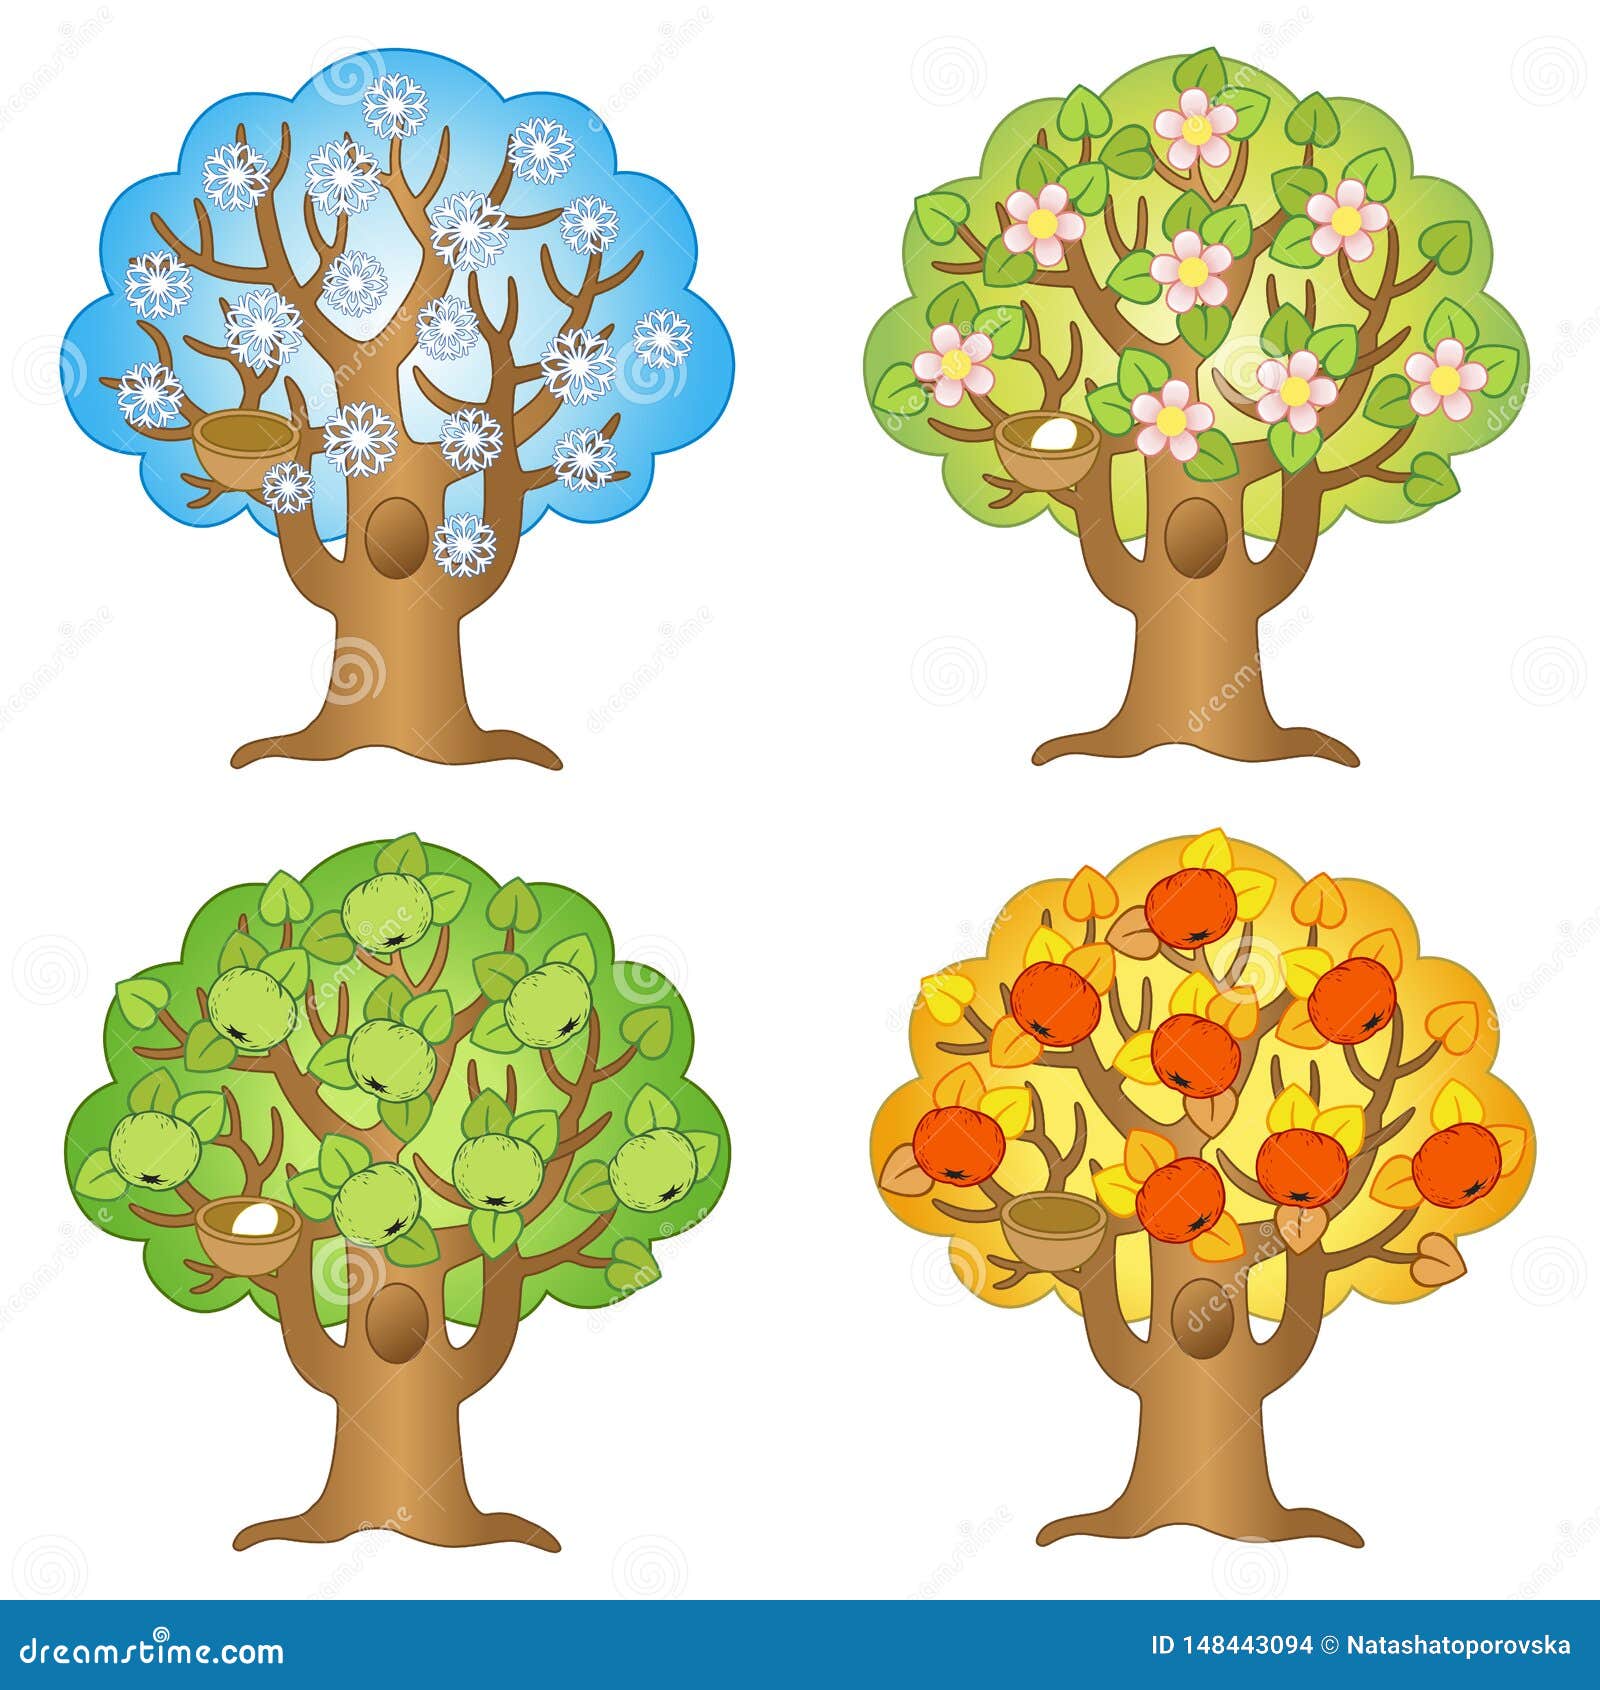 Яблоня в разные времена года. Сезонное дерево. Сезонное дерево для детей. Макет дерева по сезонам. Деревья по сезону для детей.